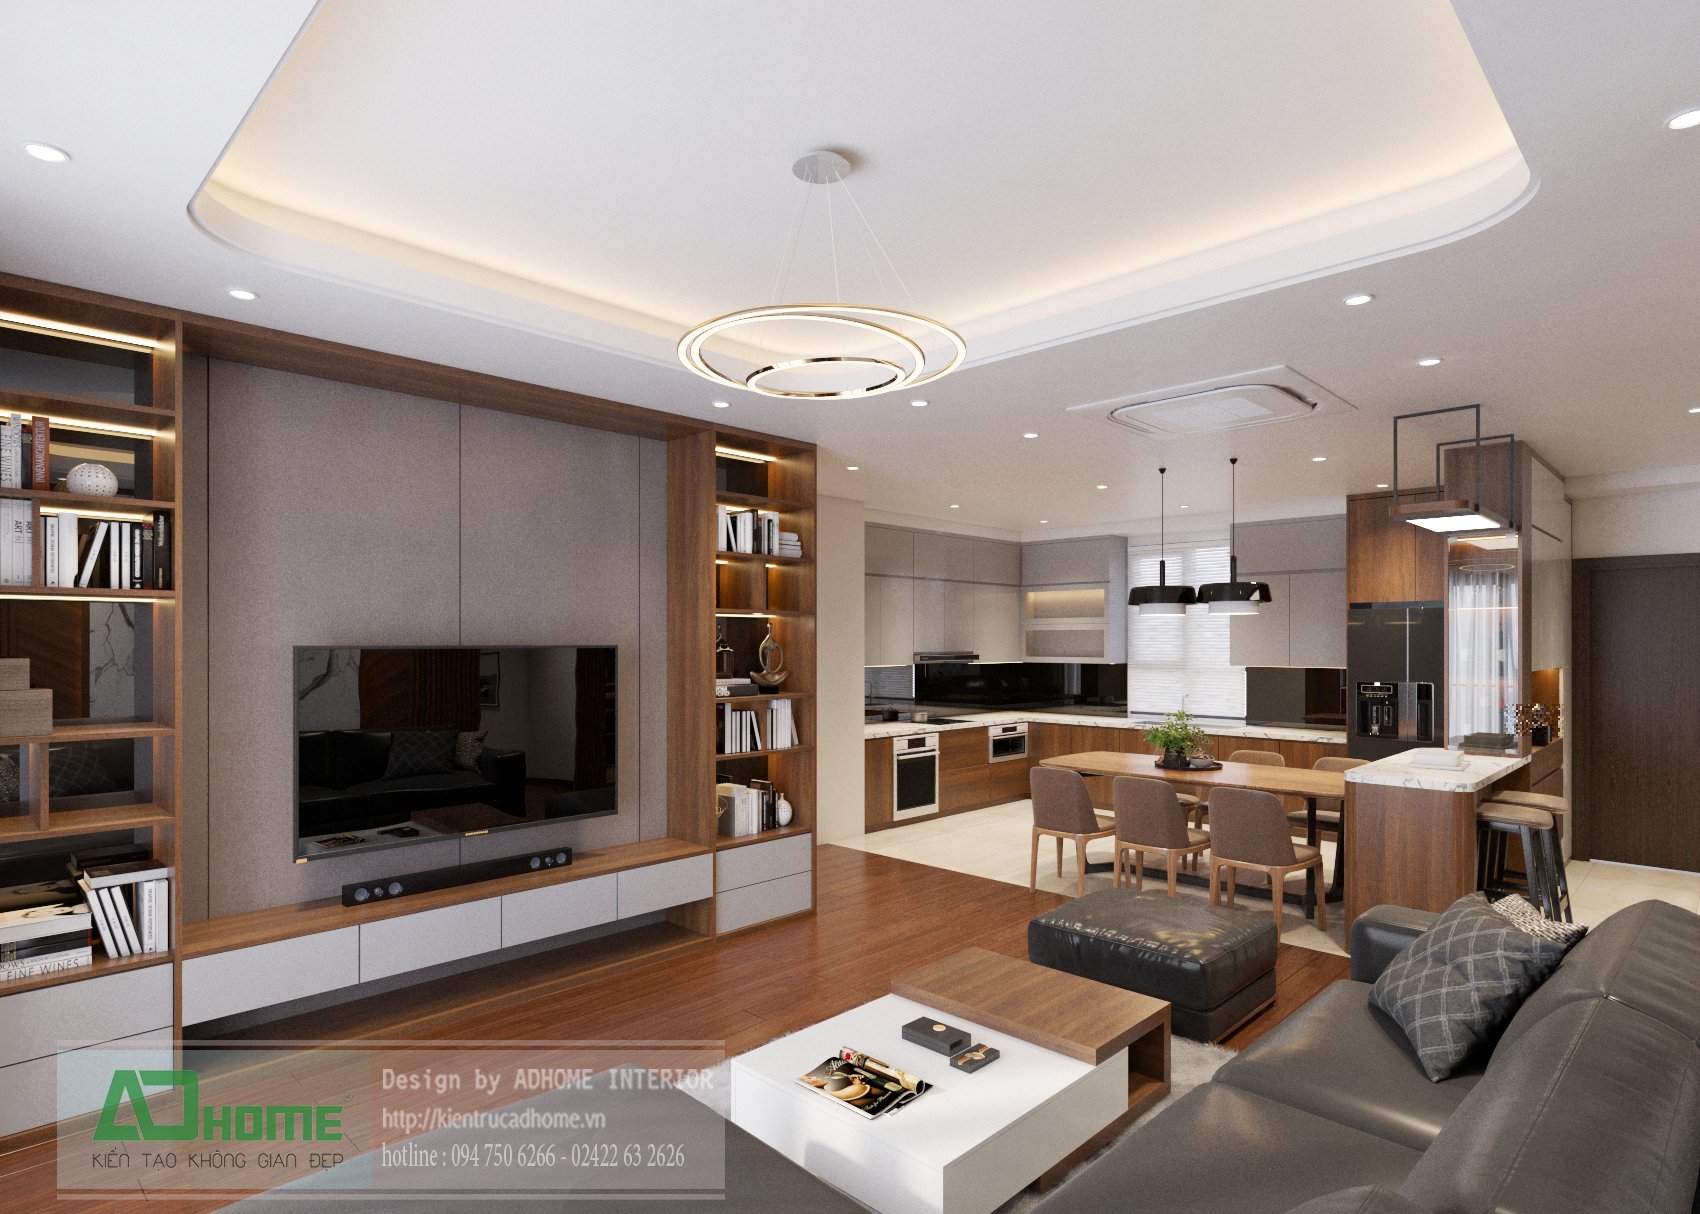  Thiết kế nội thất chung cư Goldmarkcity - 139m2 Diamond 08 - Phong cách Hiện đại